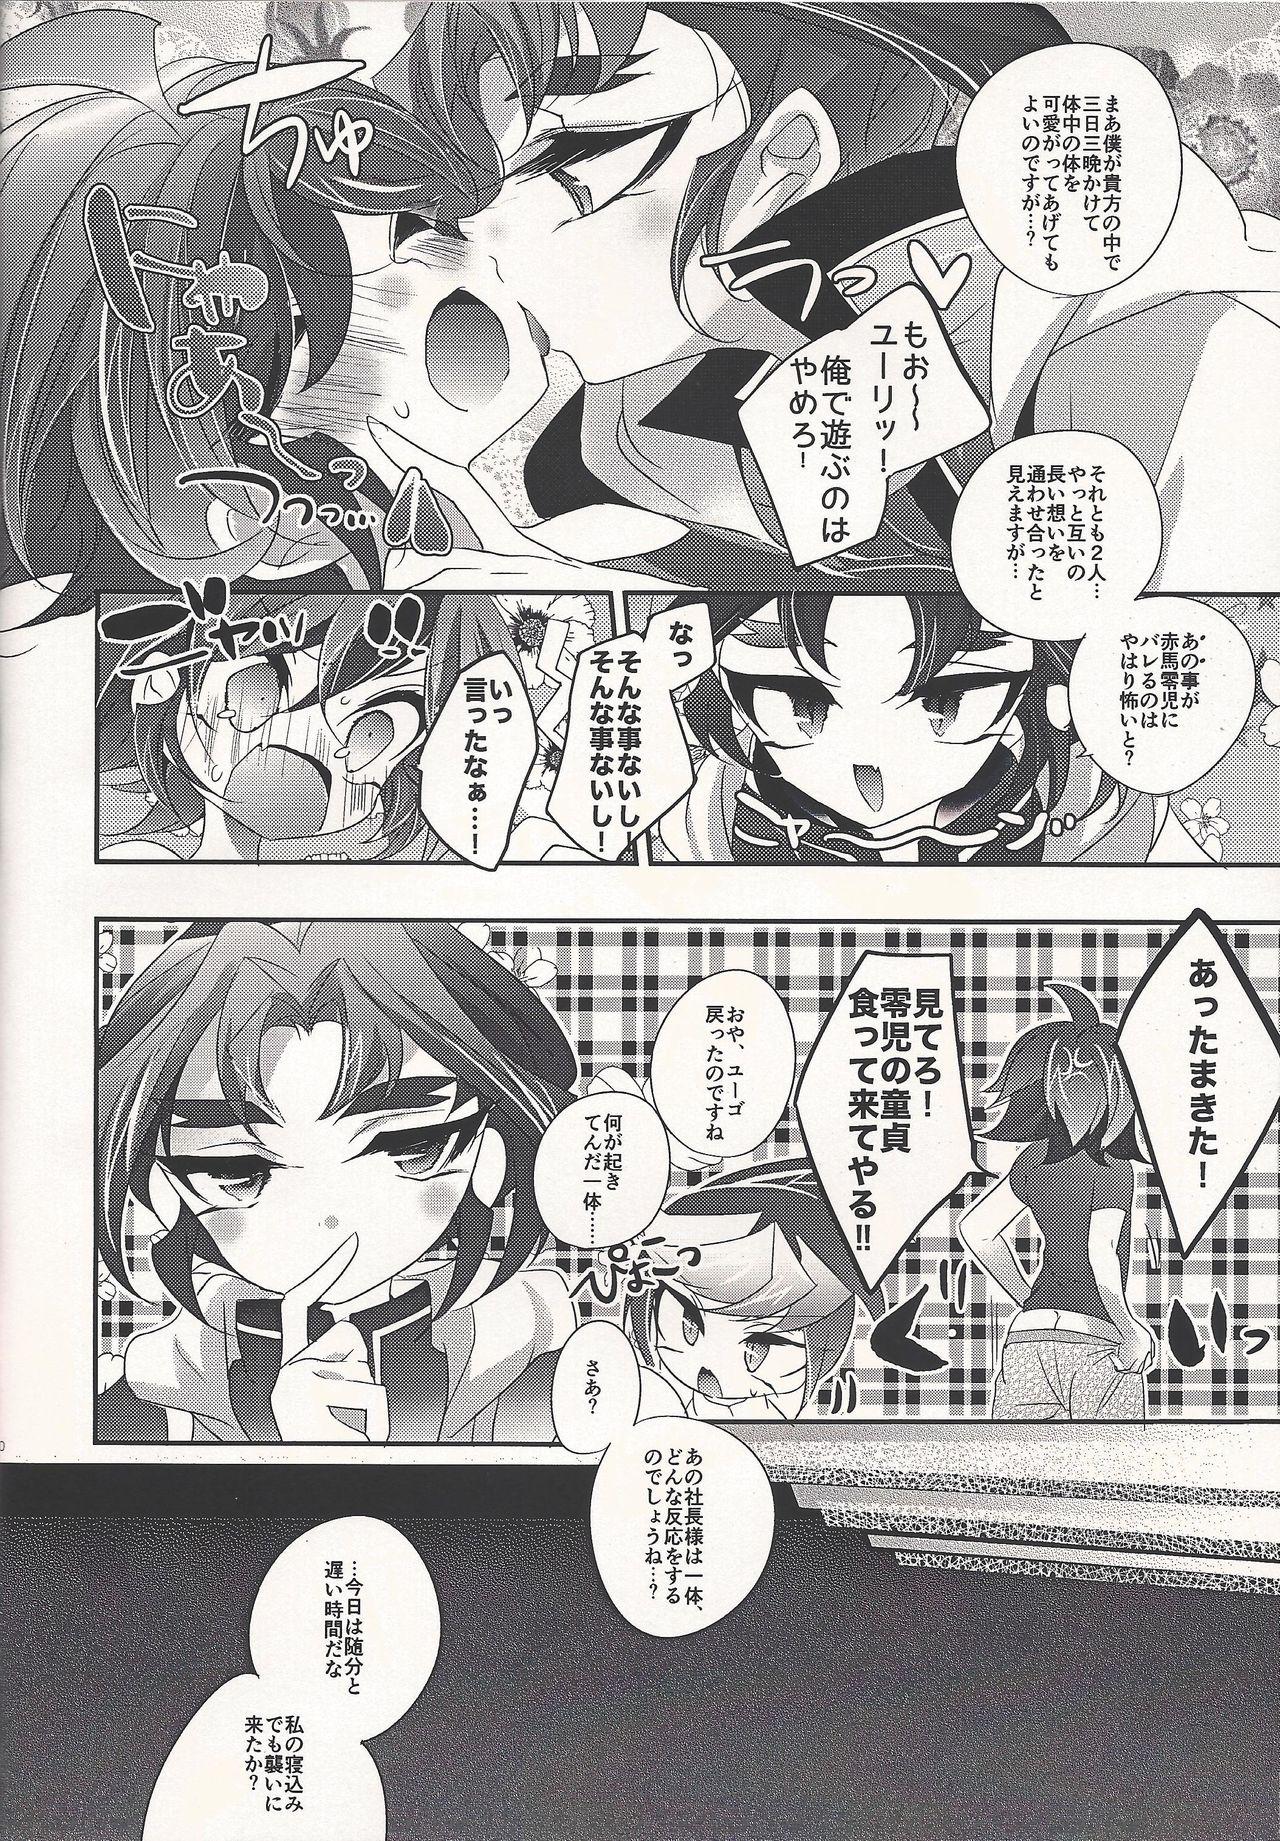 Gayhardcore Fantomu-sama no ××× - Yu-gi-oh arc-v Pickup - Page 10